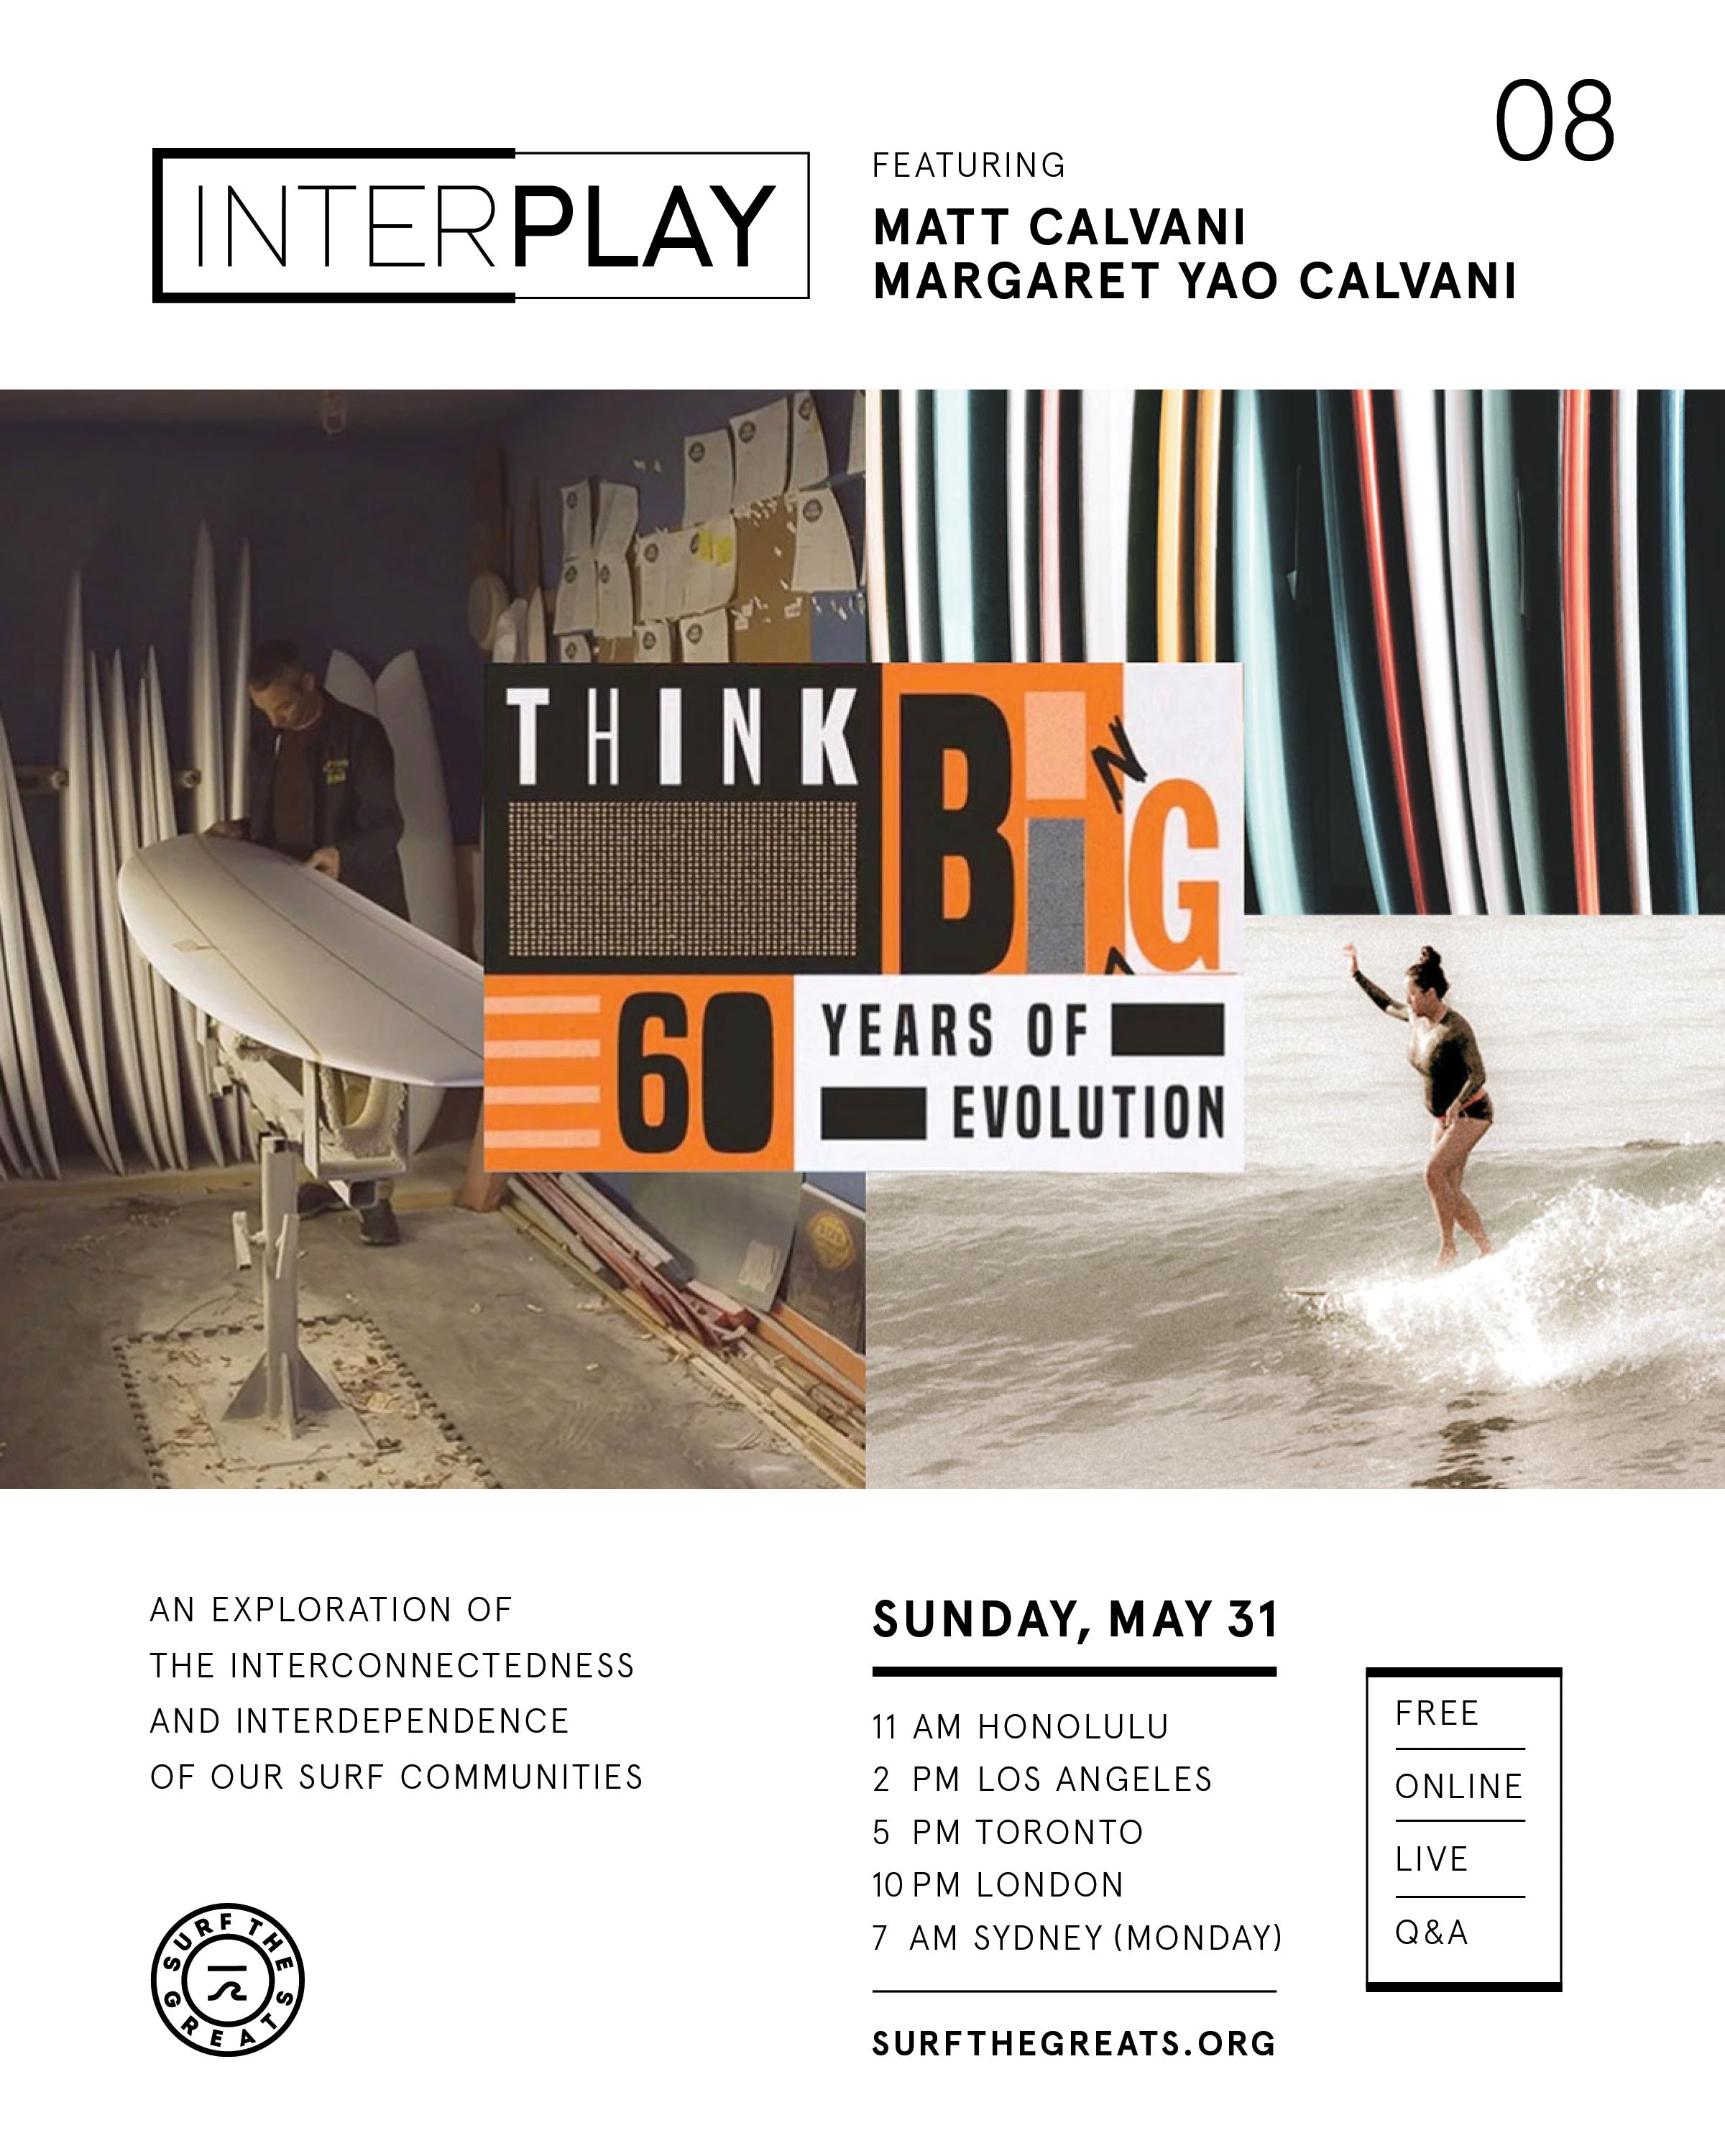 InterPlay Bing Surfboards Matt Calvani & Margaret Yao Calvani